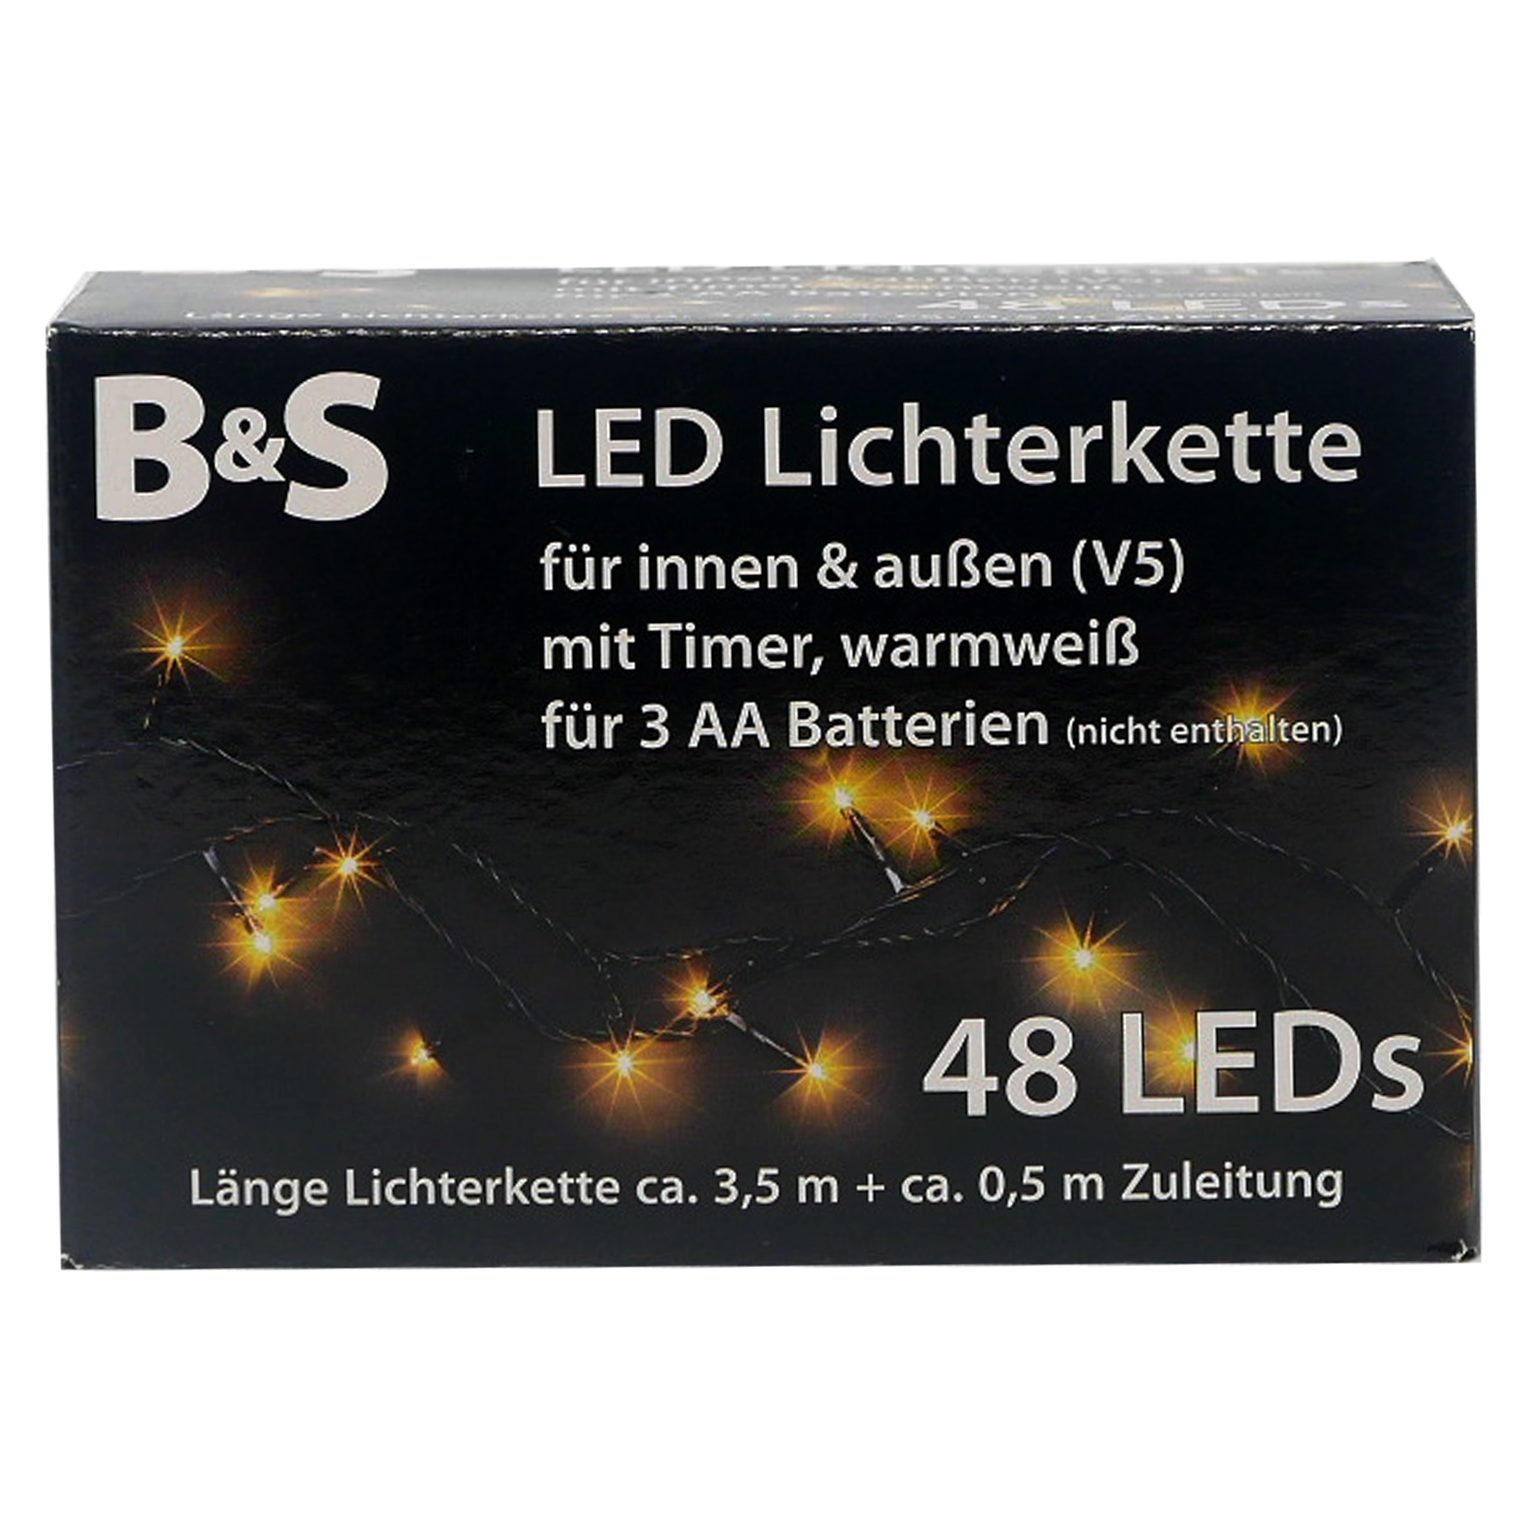 B&S LED-Lichterkette LED 48 Batterie mit LEDs warmweiß Lichterkette Innenbereich